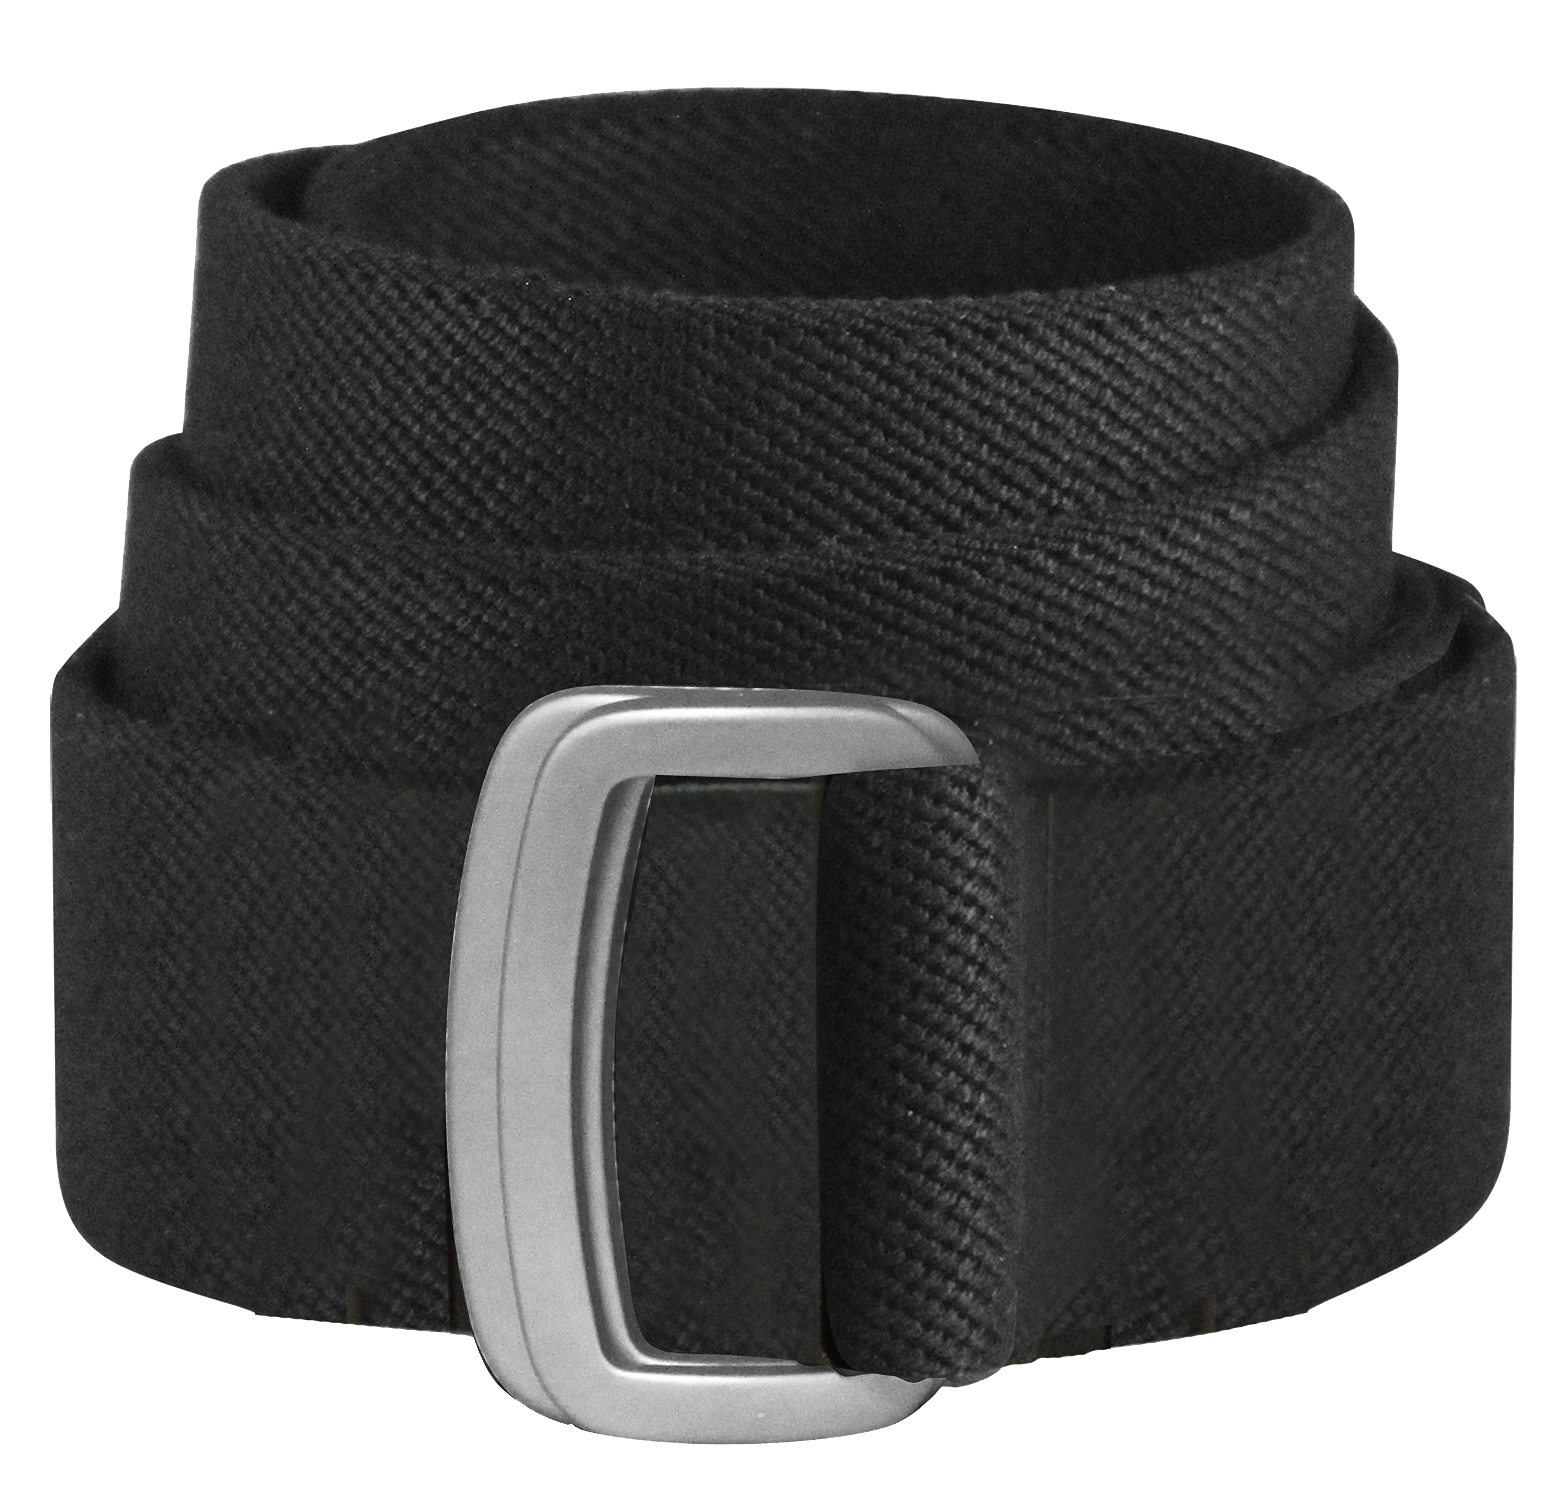 Bison Designs Subtle Cinch Belt for Men - Black - L